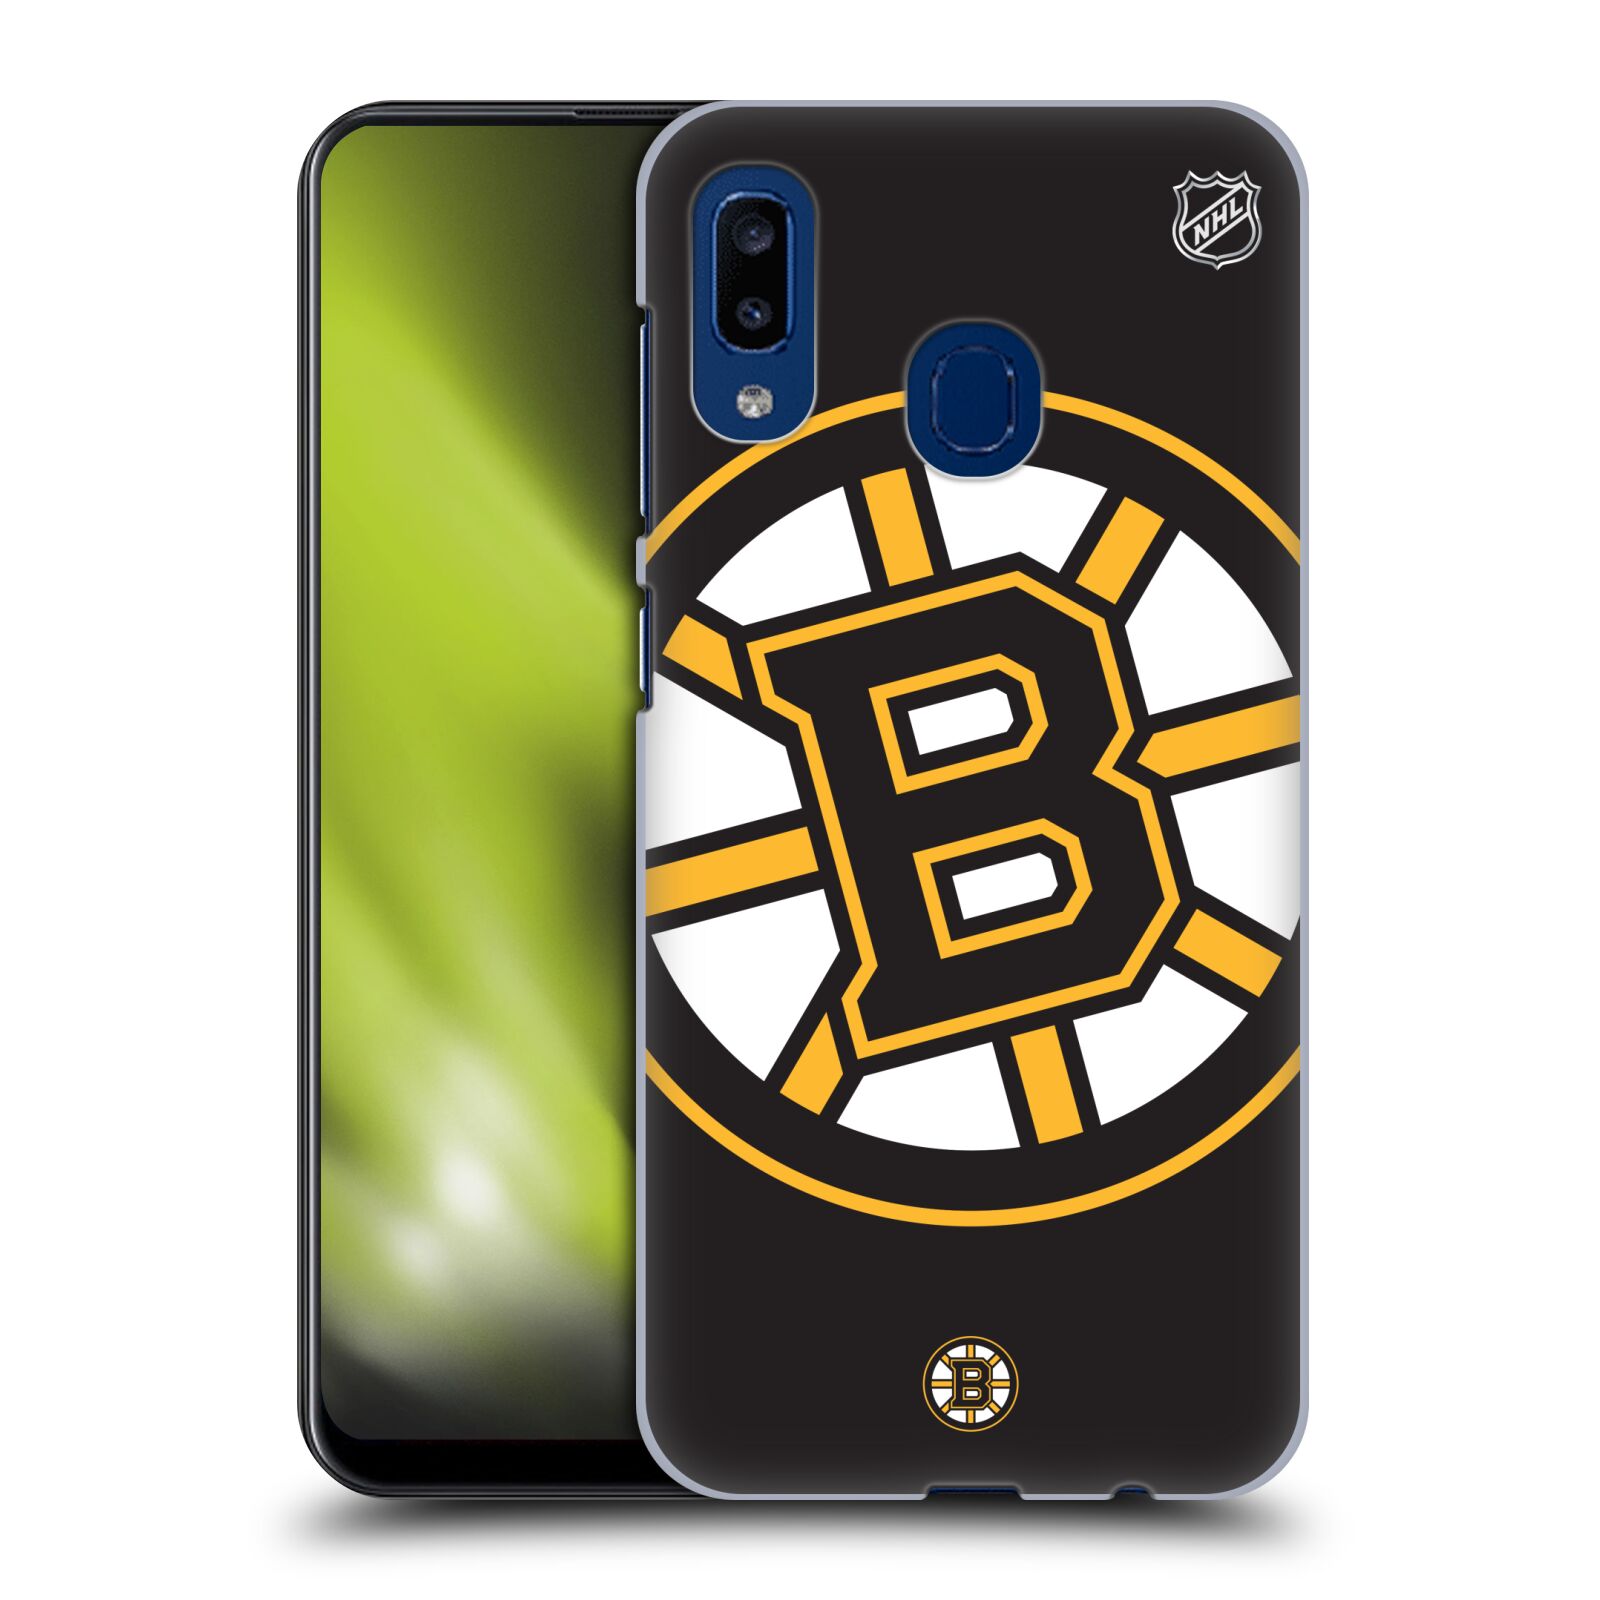 Pouzdro na mobil Samsung Galaxy A20 - HEAD CASE - Hokej NHL - Boston Bruins - velký znak